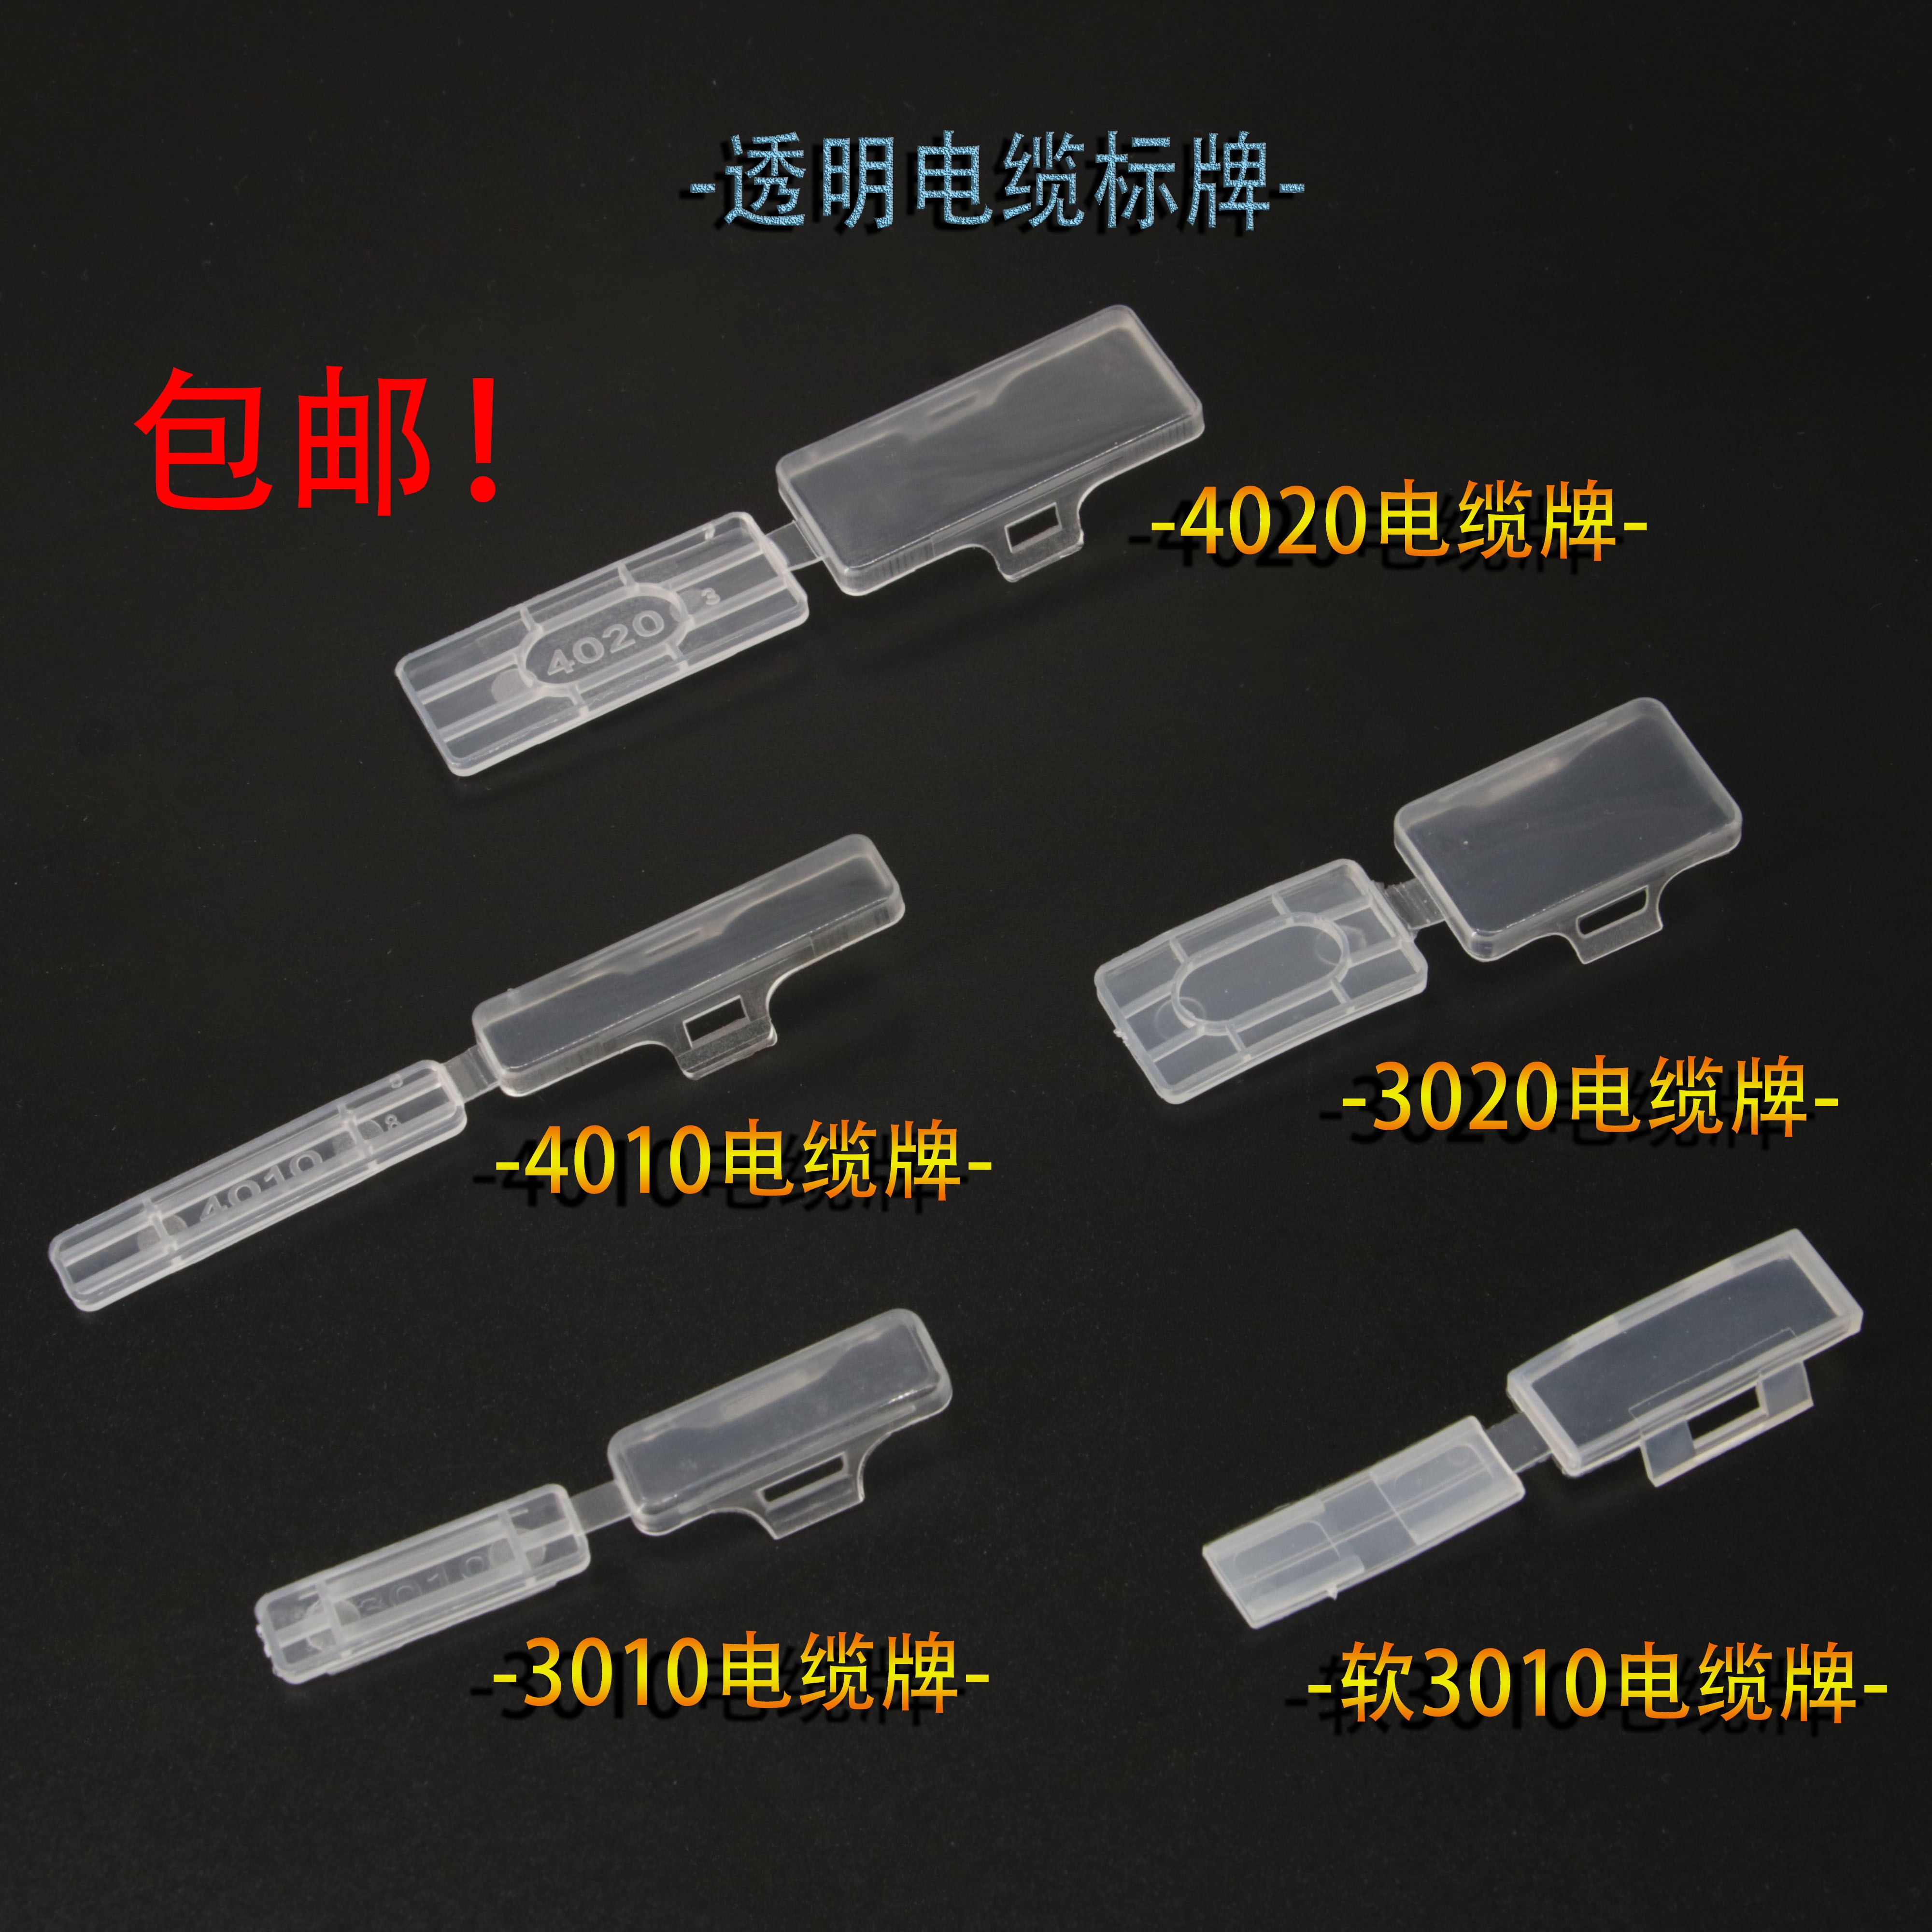 케이블타이 4020 투명 플라스틱 방수 케이블 로고 보호 커버 기호 레이블 세트 상자